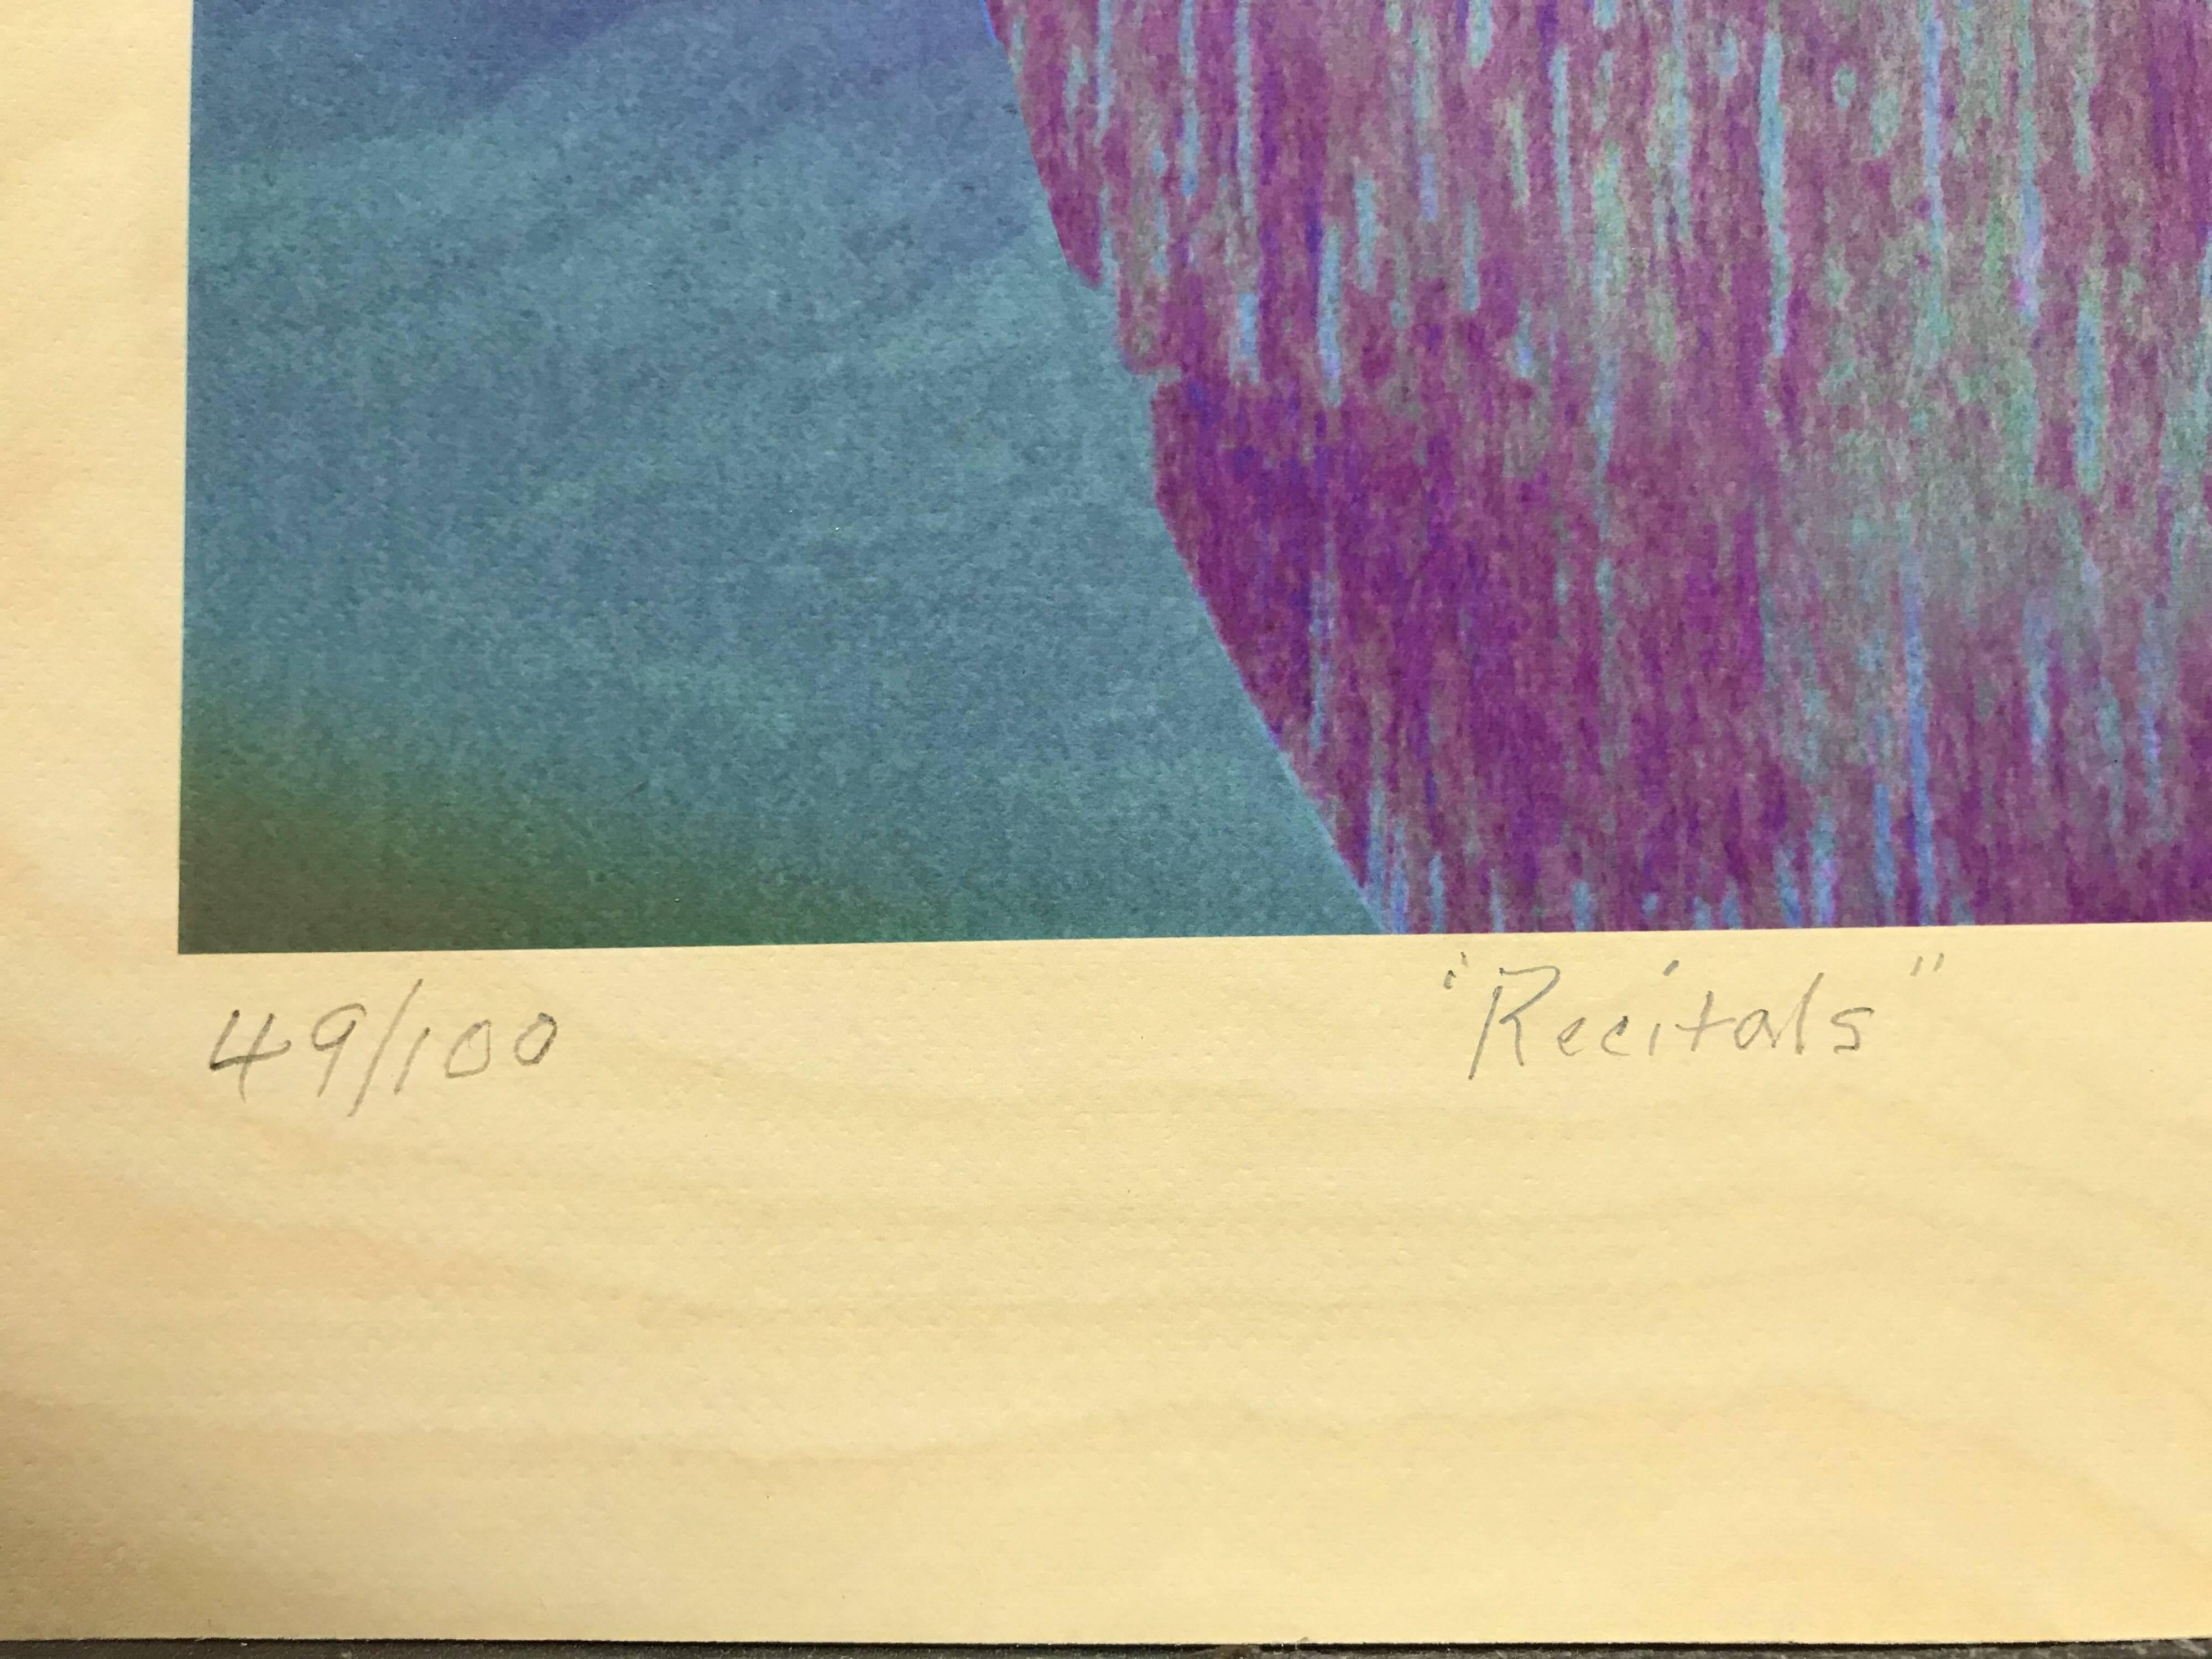 RECITALS ist ein Mixed-Media-Druck in limitierter Auflage des renommierten afroamerikanischen Künstlers Sam Gilliam, der mit Archival Inkjet-, Relief- und Schablonentechniken erstellt wurde. Diese vertikale, regenbogenfarbene, kühne geometrische